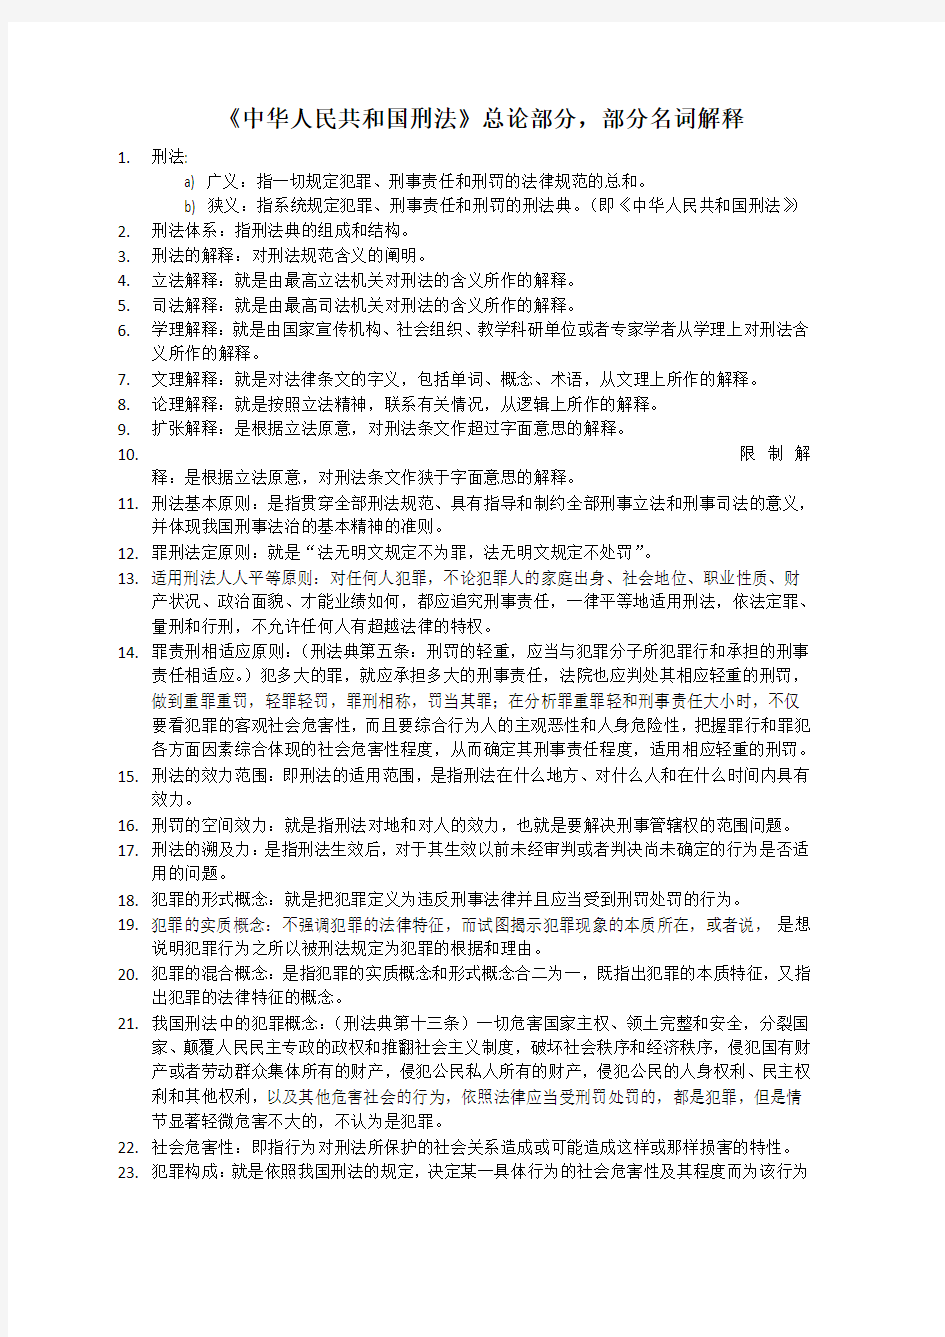 《中华人民共和国刑法》——部分名词解释